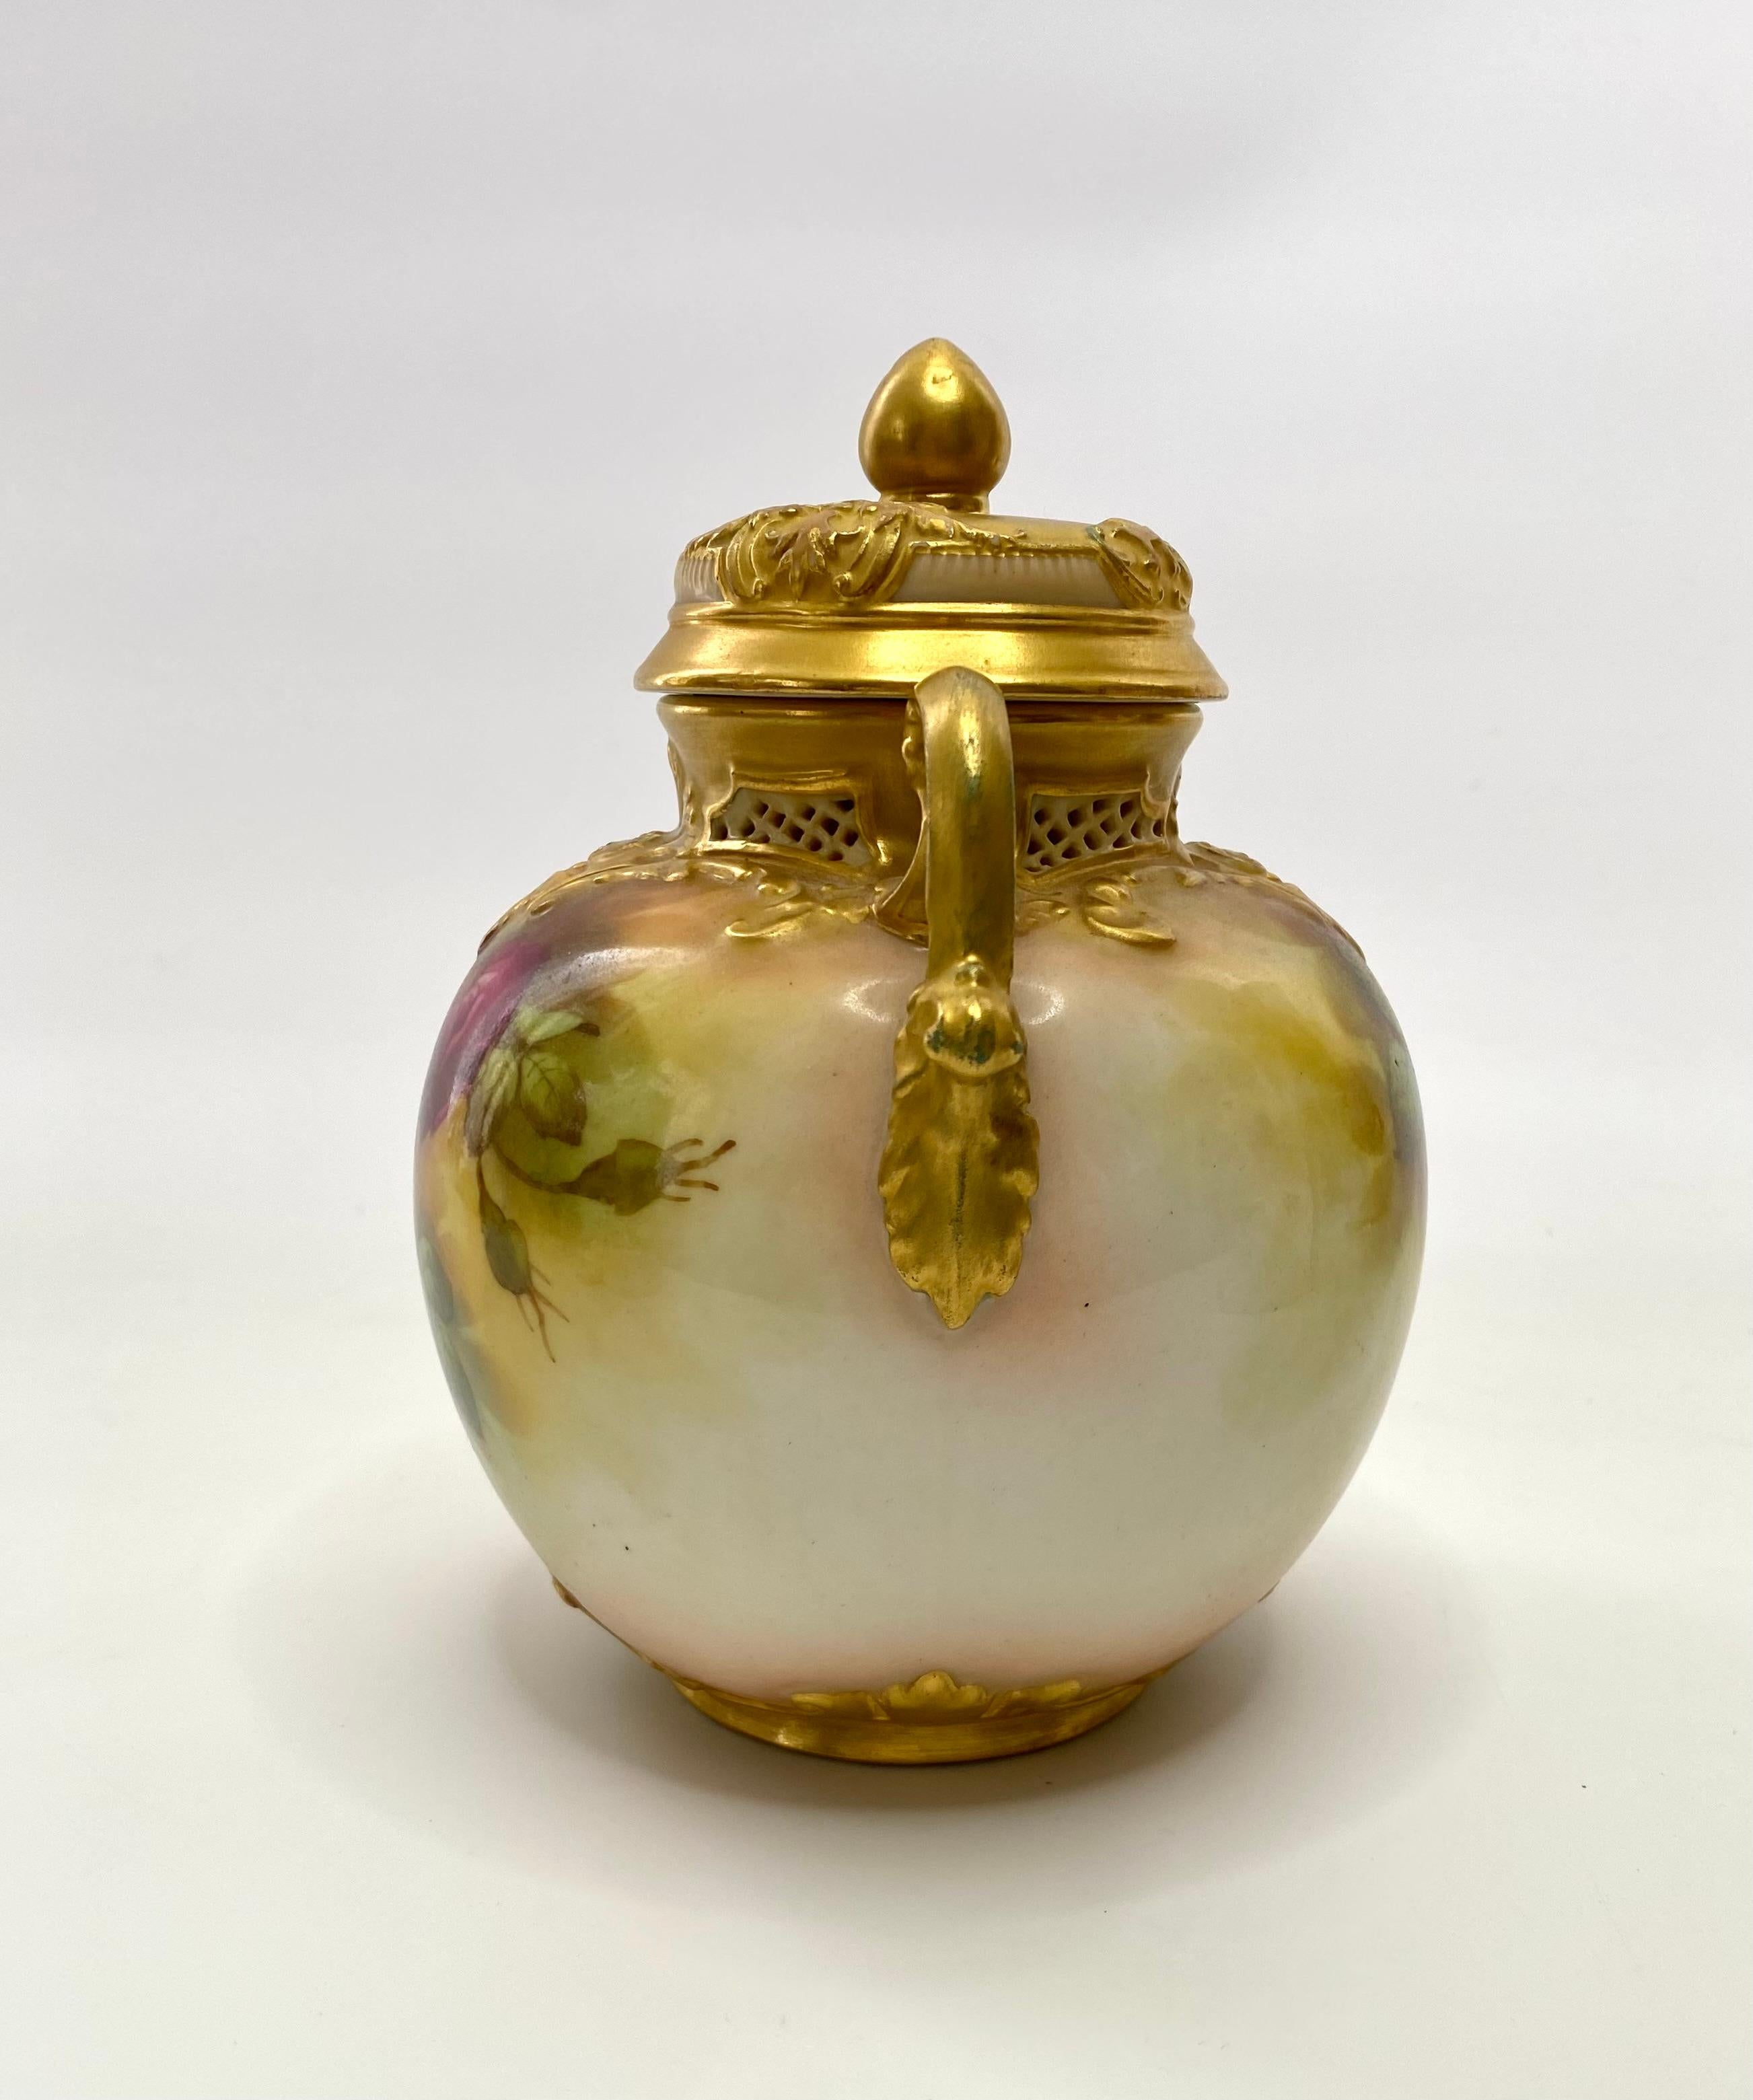 Pot pourri et couvercle en porcelaine Royal Worcester, F. Harper, daté de 1919. Le pot pourri globulaire est moulé avec un travail de rouleau, encadrant une galerie percée, et a deux poignées de rouleau dorées.
Peint à la main sur les deux faces,